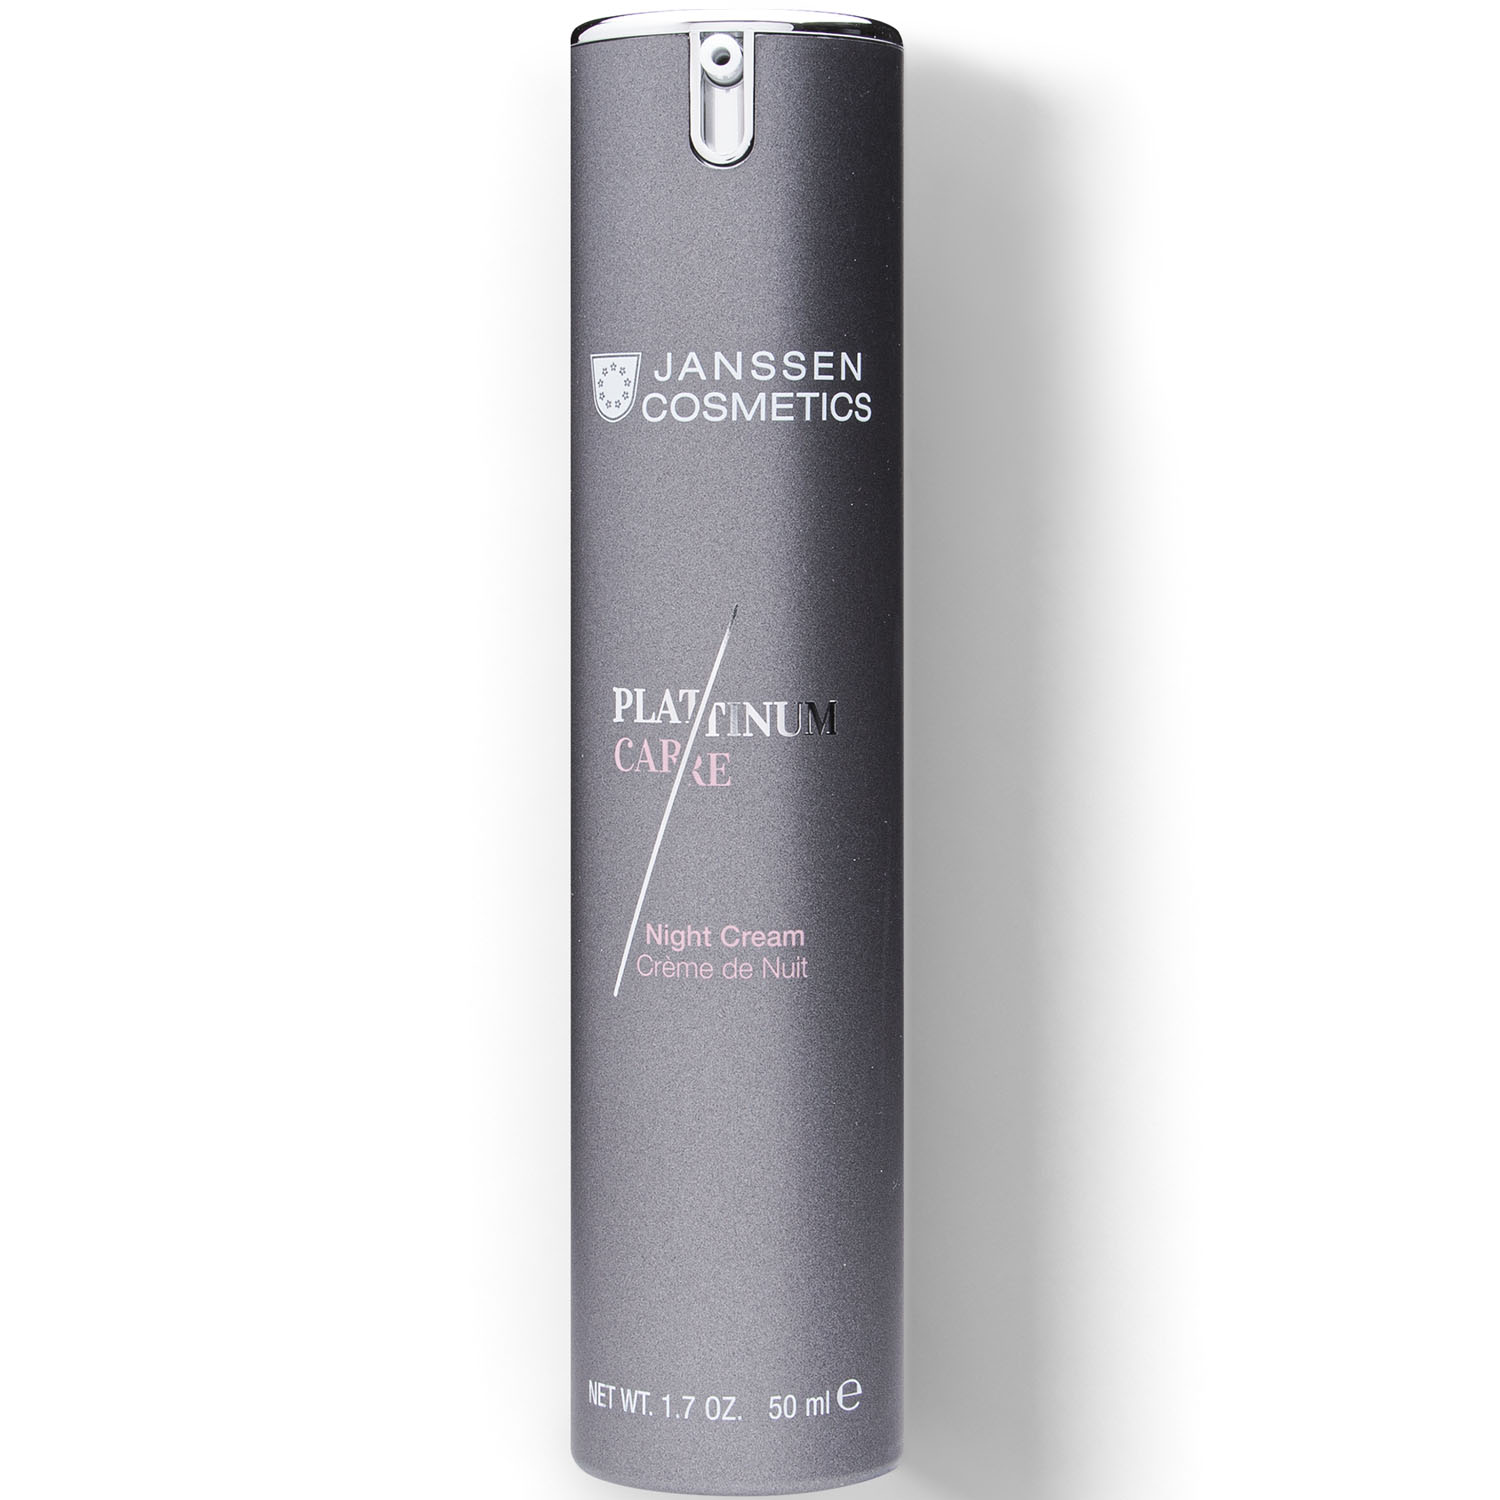 Янсен Косметикс Реструктурирующий ночной крем с коллоидной платиной Night Cream, 50 мл (Janssen Cosmetics, Platinum Care) фото 0